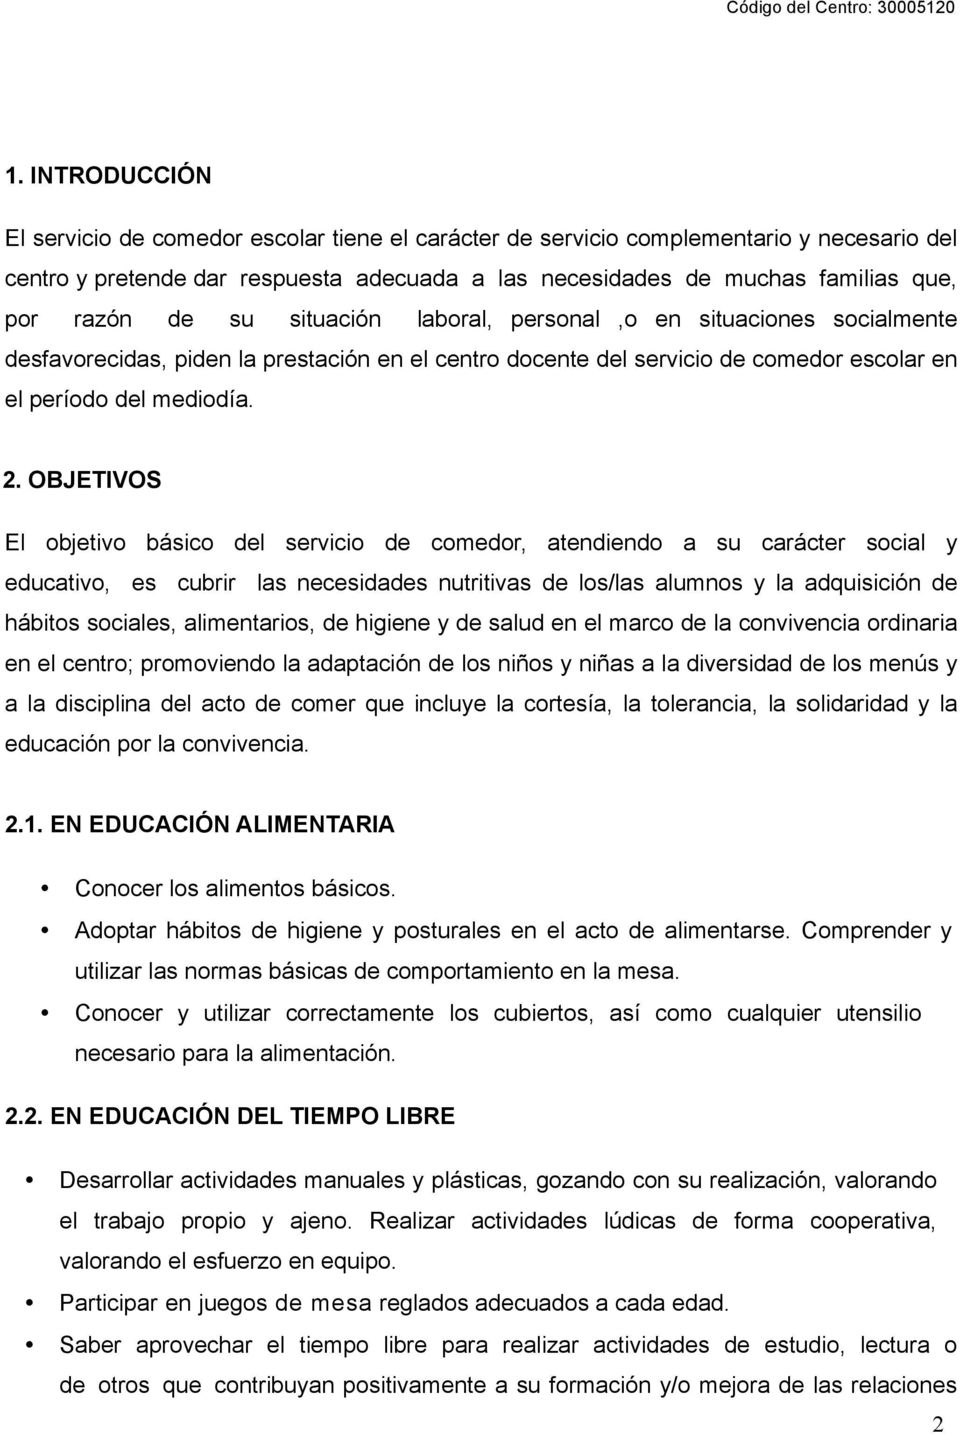 PROYECTO EDUCATIVO DEL COMEDOR ESCOLAR - PDF Descargar libre